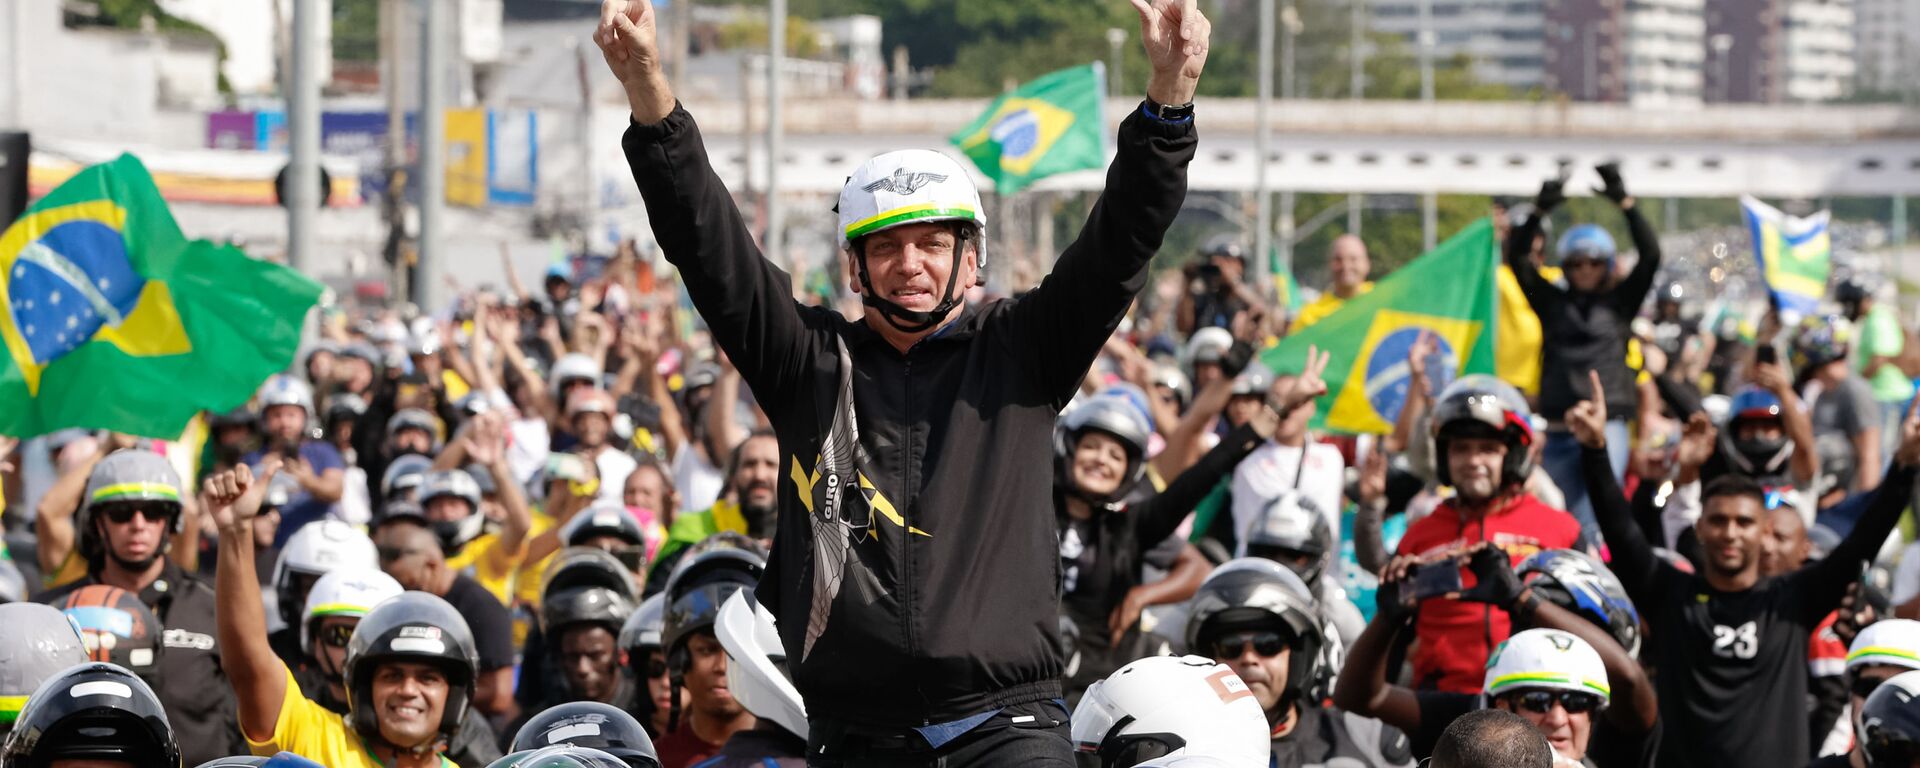 Presidente Jair Bolsonaro durante passeio de moto. Ir a favor do valor do fundo eleitoral pode prejudicar a ideia de popular e honesto do presidente - Sputnik Brasil, 1920, 23.06.2021